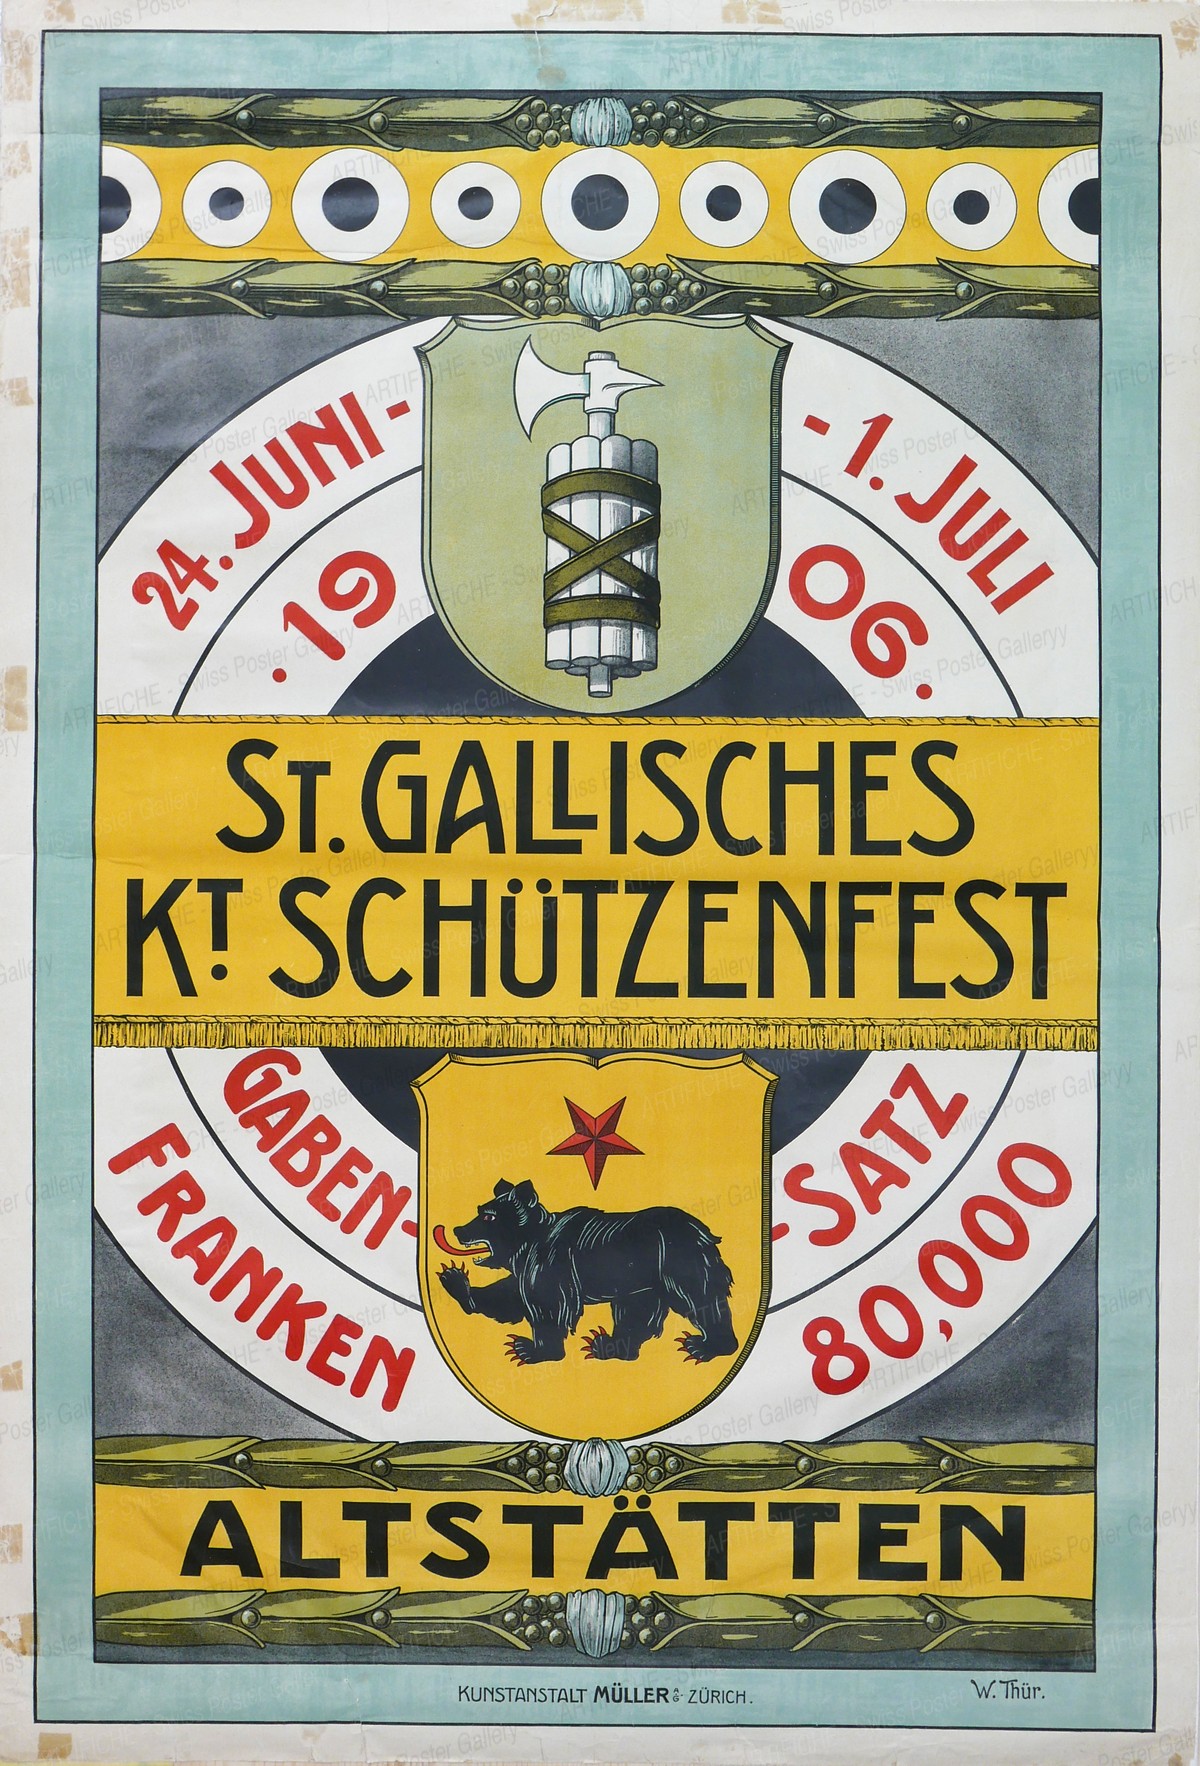 St. Gallisches Kantonales Schützenfest 1906 in Altstätten, W. Thür